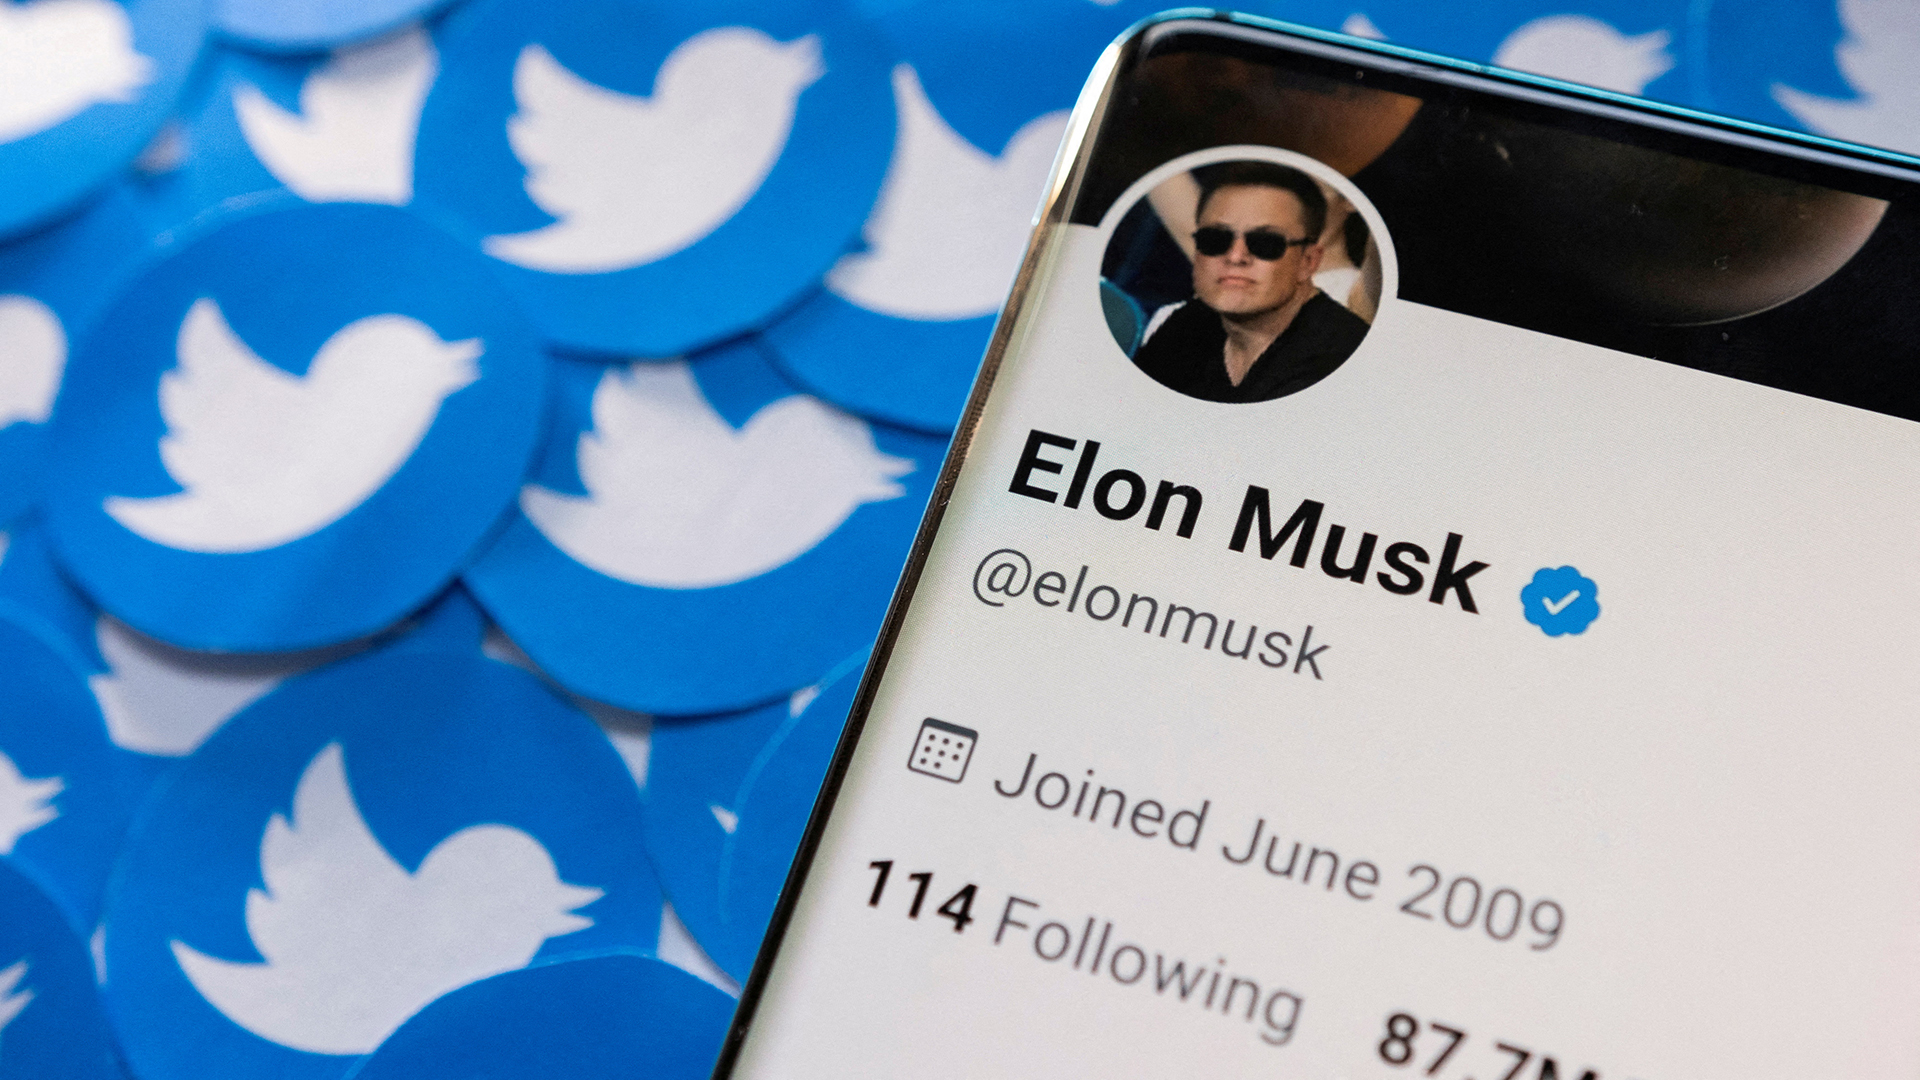 Das Twitter-Profil von Elon Musk ist auf einem Smartphone zu sehen, das auf gedruckten Twitter-Logos platziert ist.